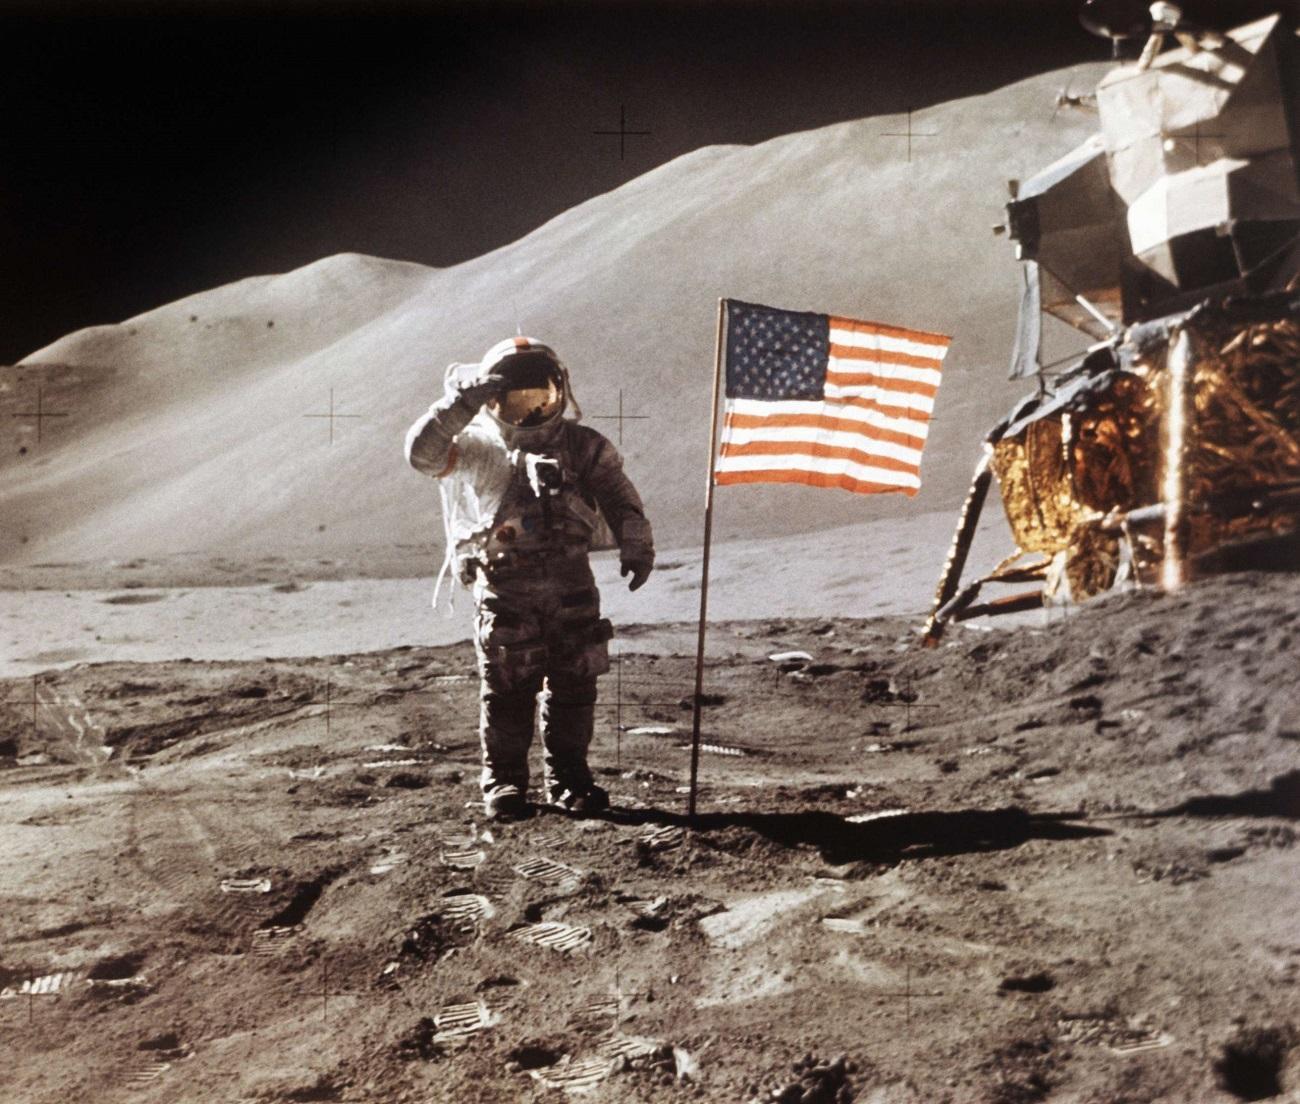 رائد فضاء أميركي يهبط على القمر في رحلة أبولو 15 عام 1971